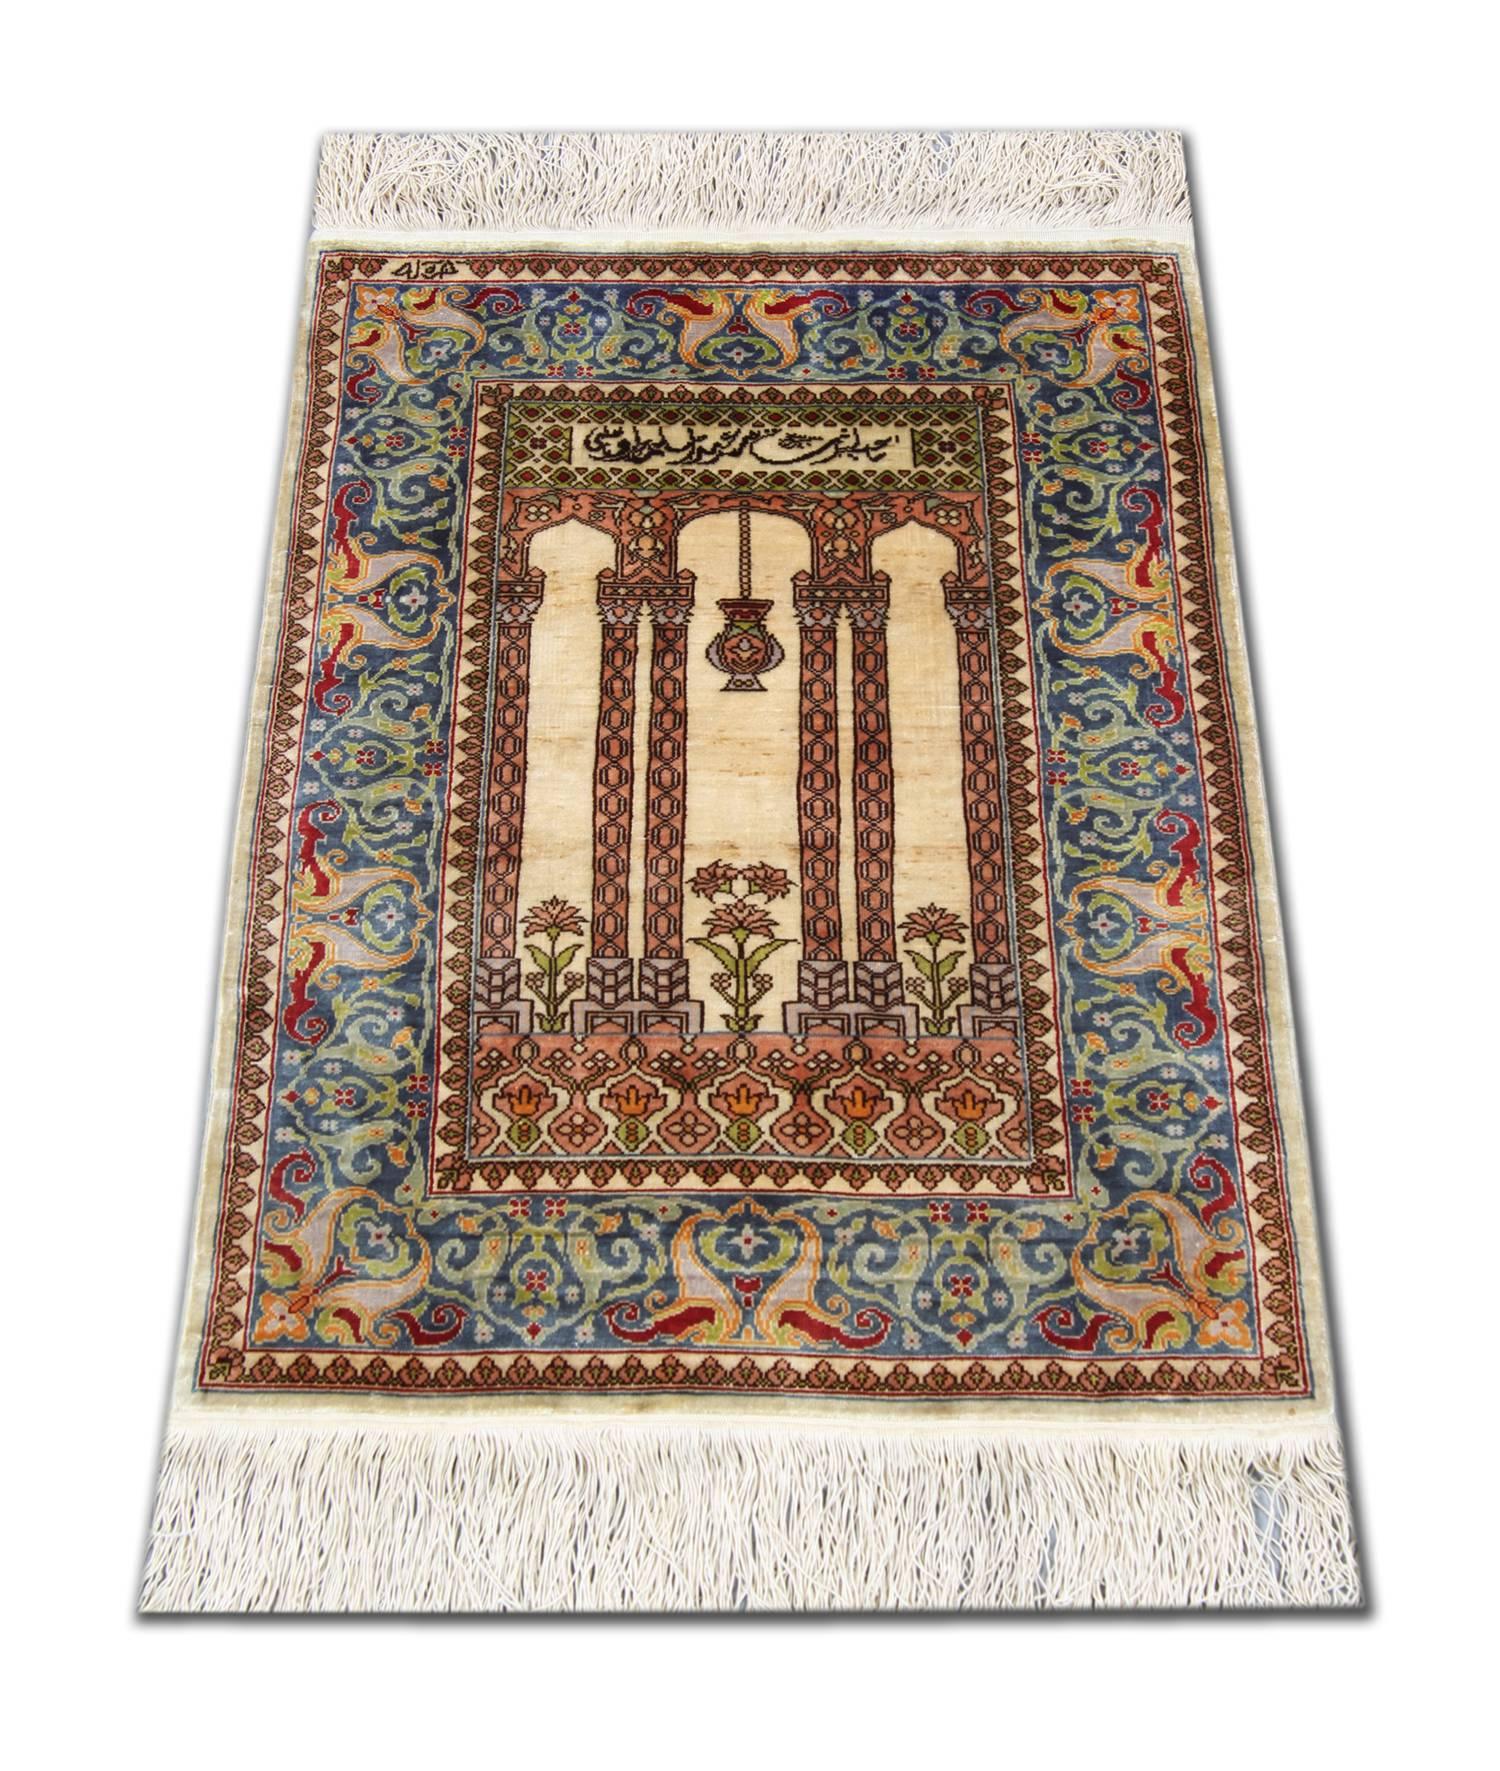 Ein antiker Hereke-Teppich aus türkischer Seide, um 1970 gewebt. Diese feinen, handgefertigten Teppiche haben einen glänzenden, kurzen Seidenflor mit einem Lebensbaum-Muster an einem Ende des elfenbeinfarbenen Mittelfeldes, schönen Blumenköpfen in